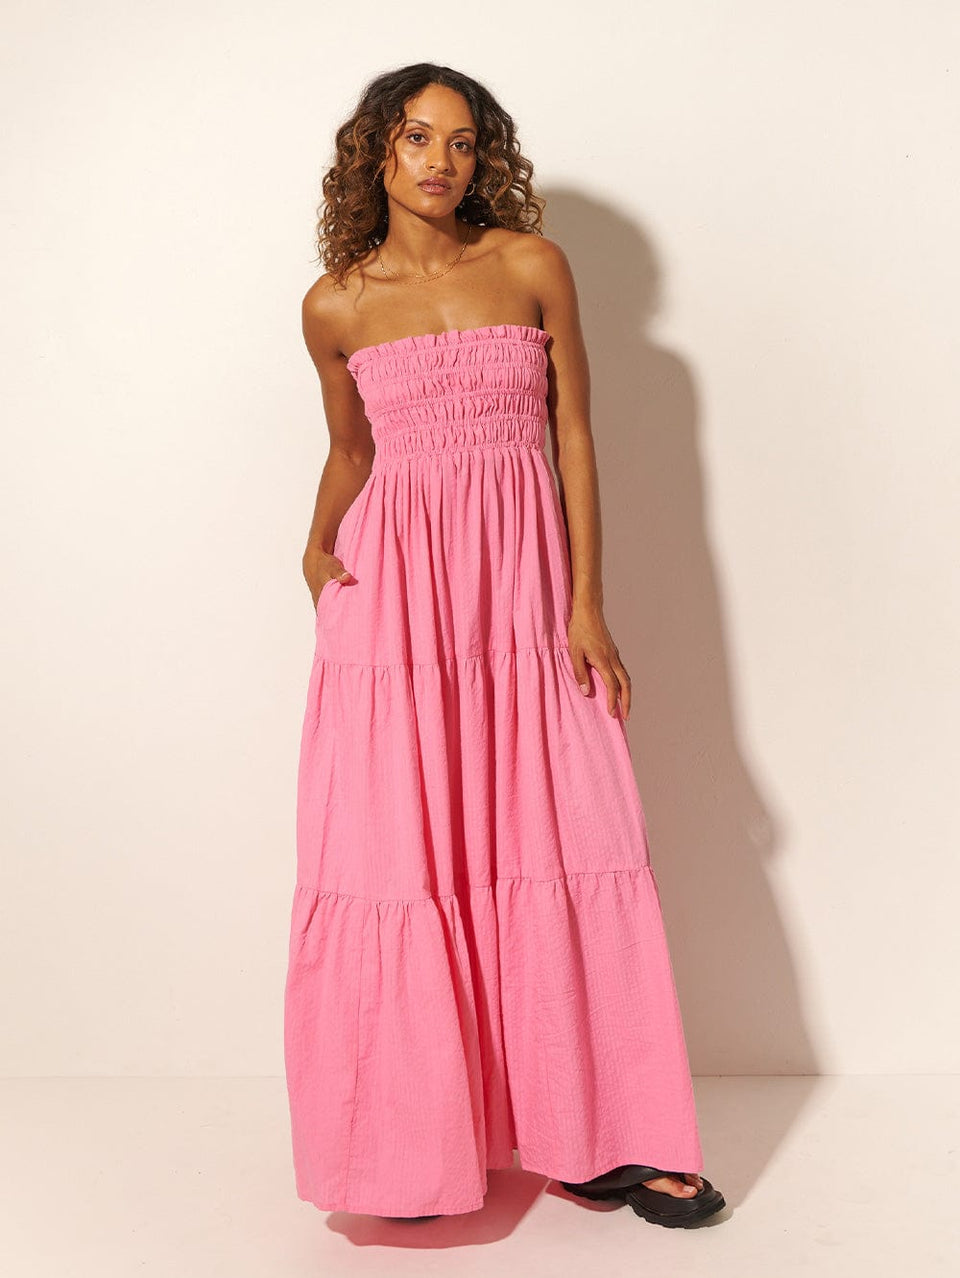 KIVARI Laura Maxi Dress | Model wears Pink Maxi Dress